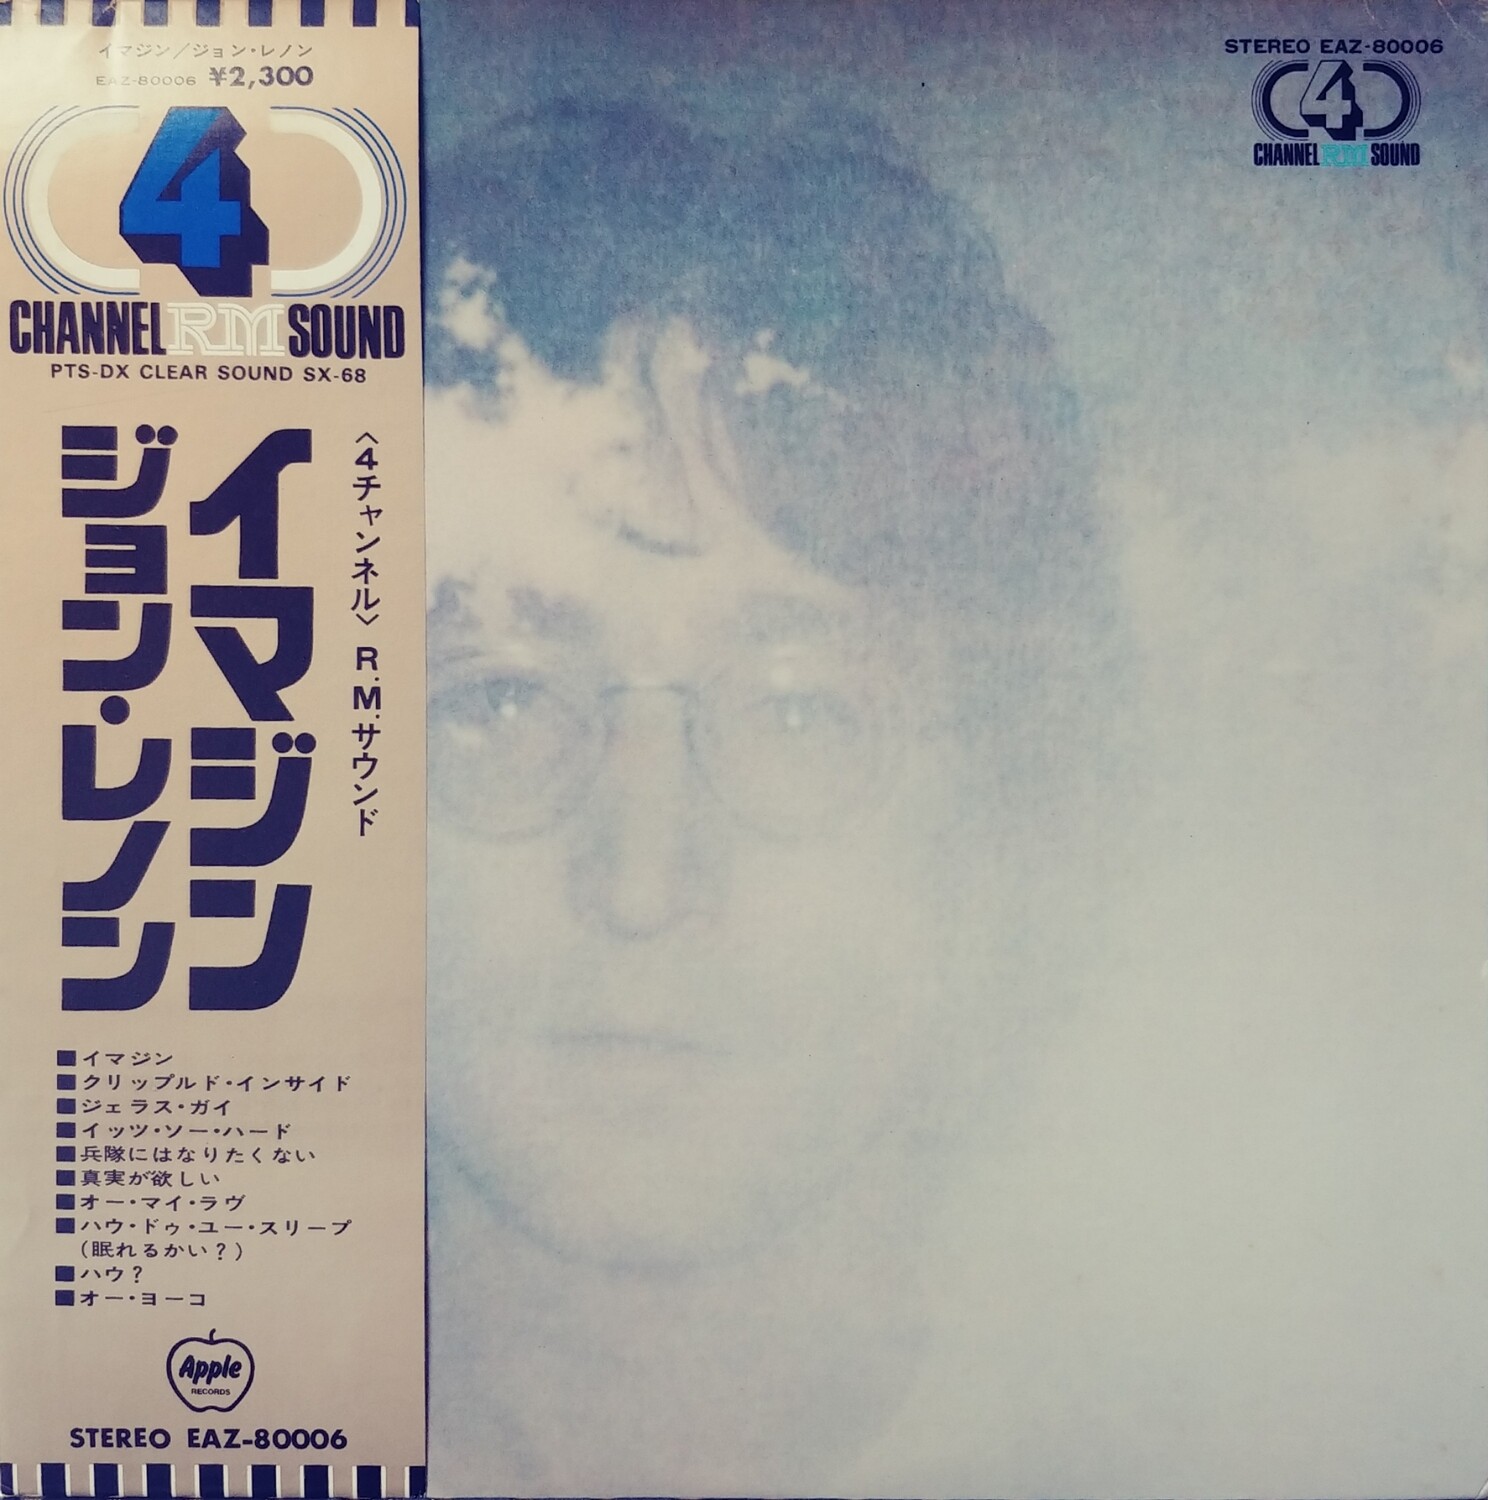 John Lennon - Imagine (JAPAN)